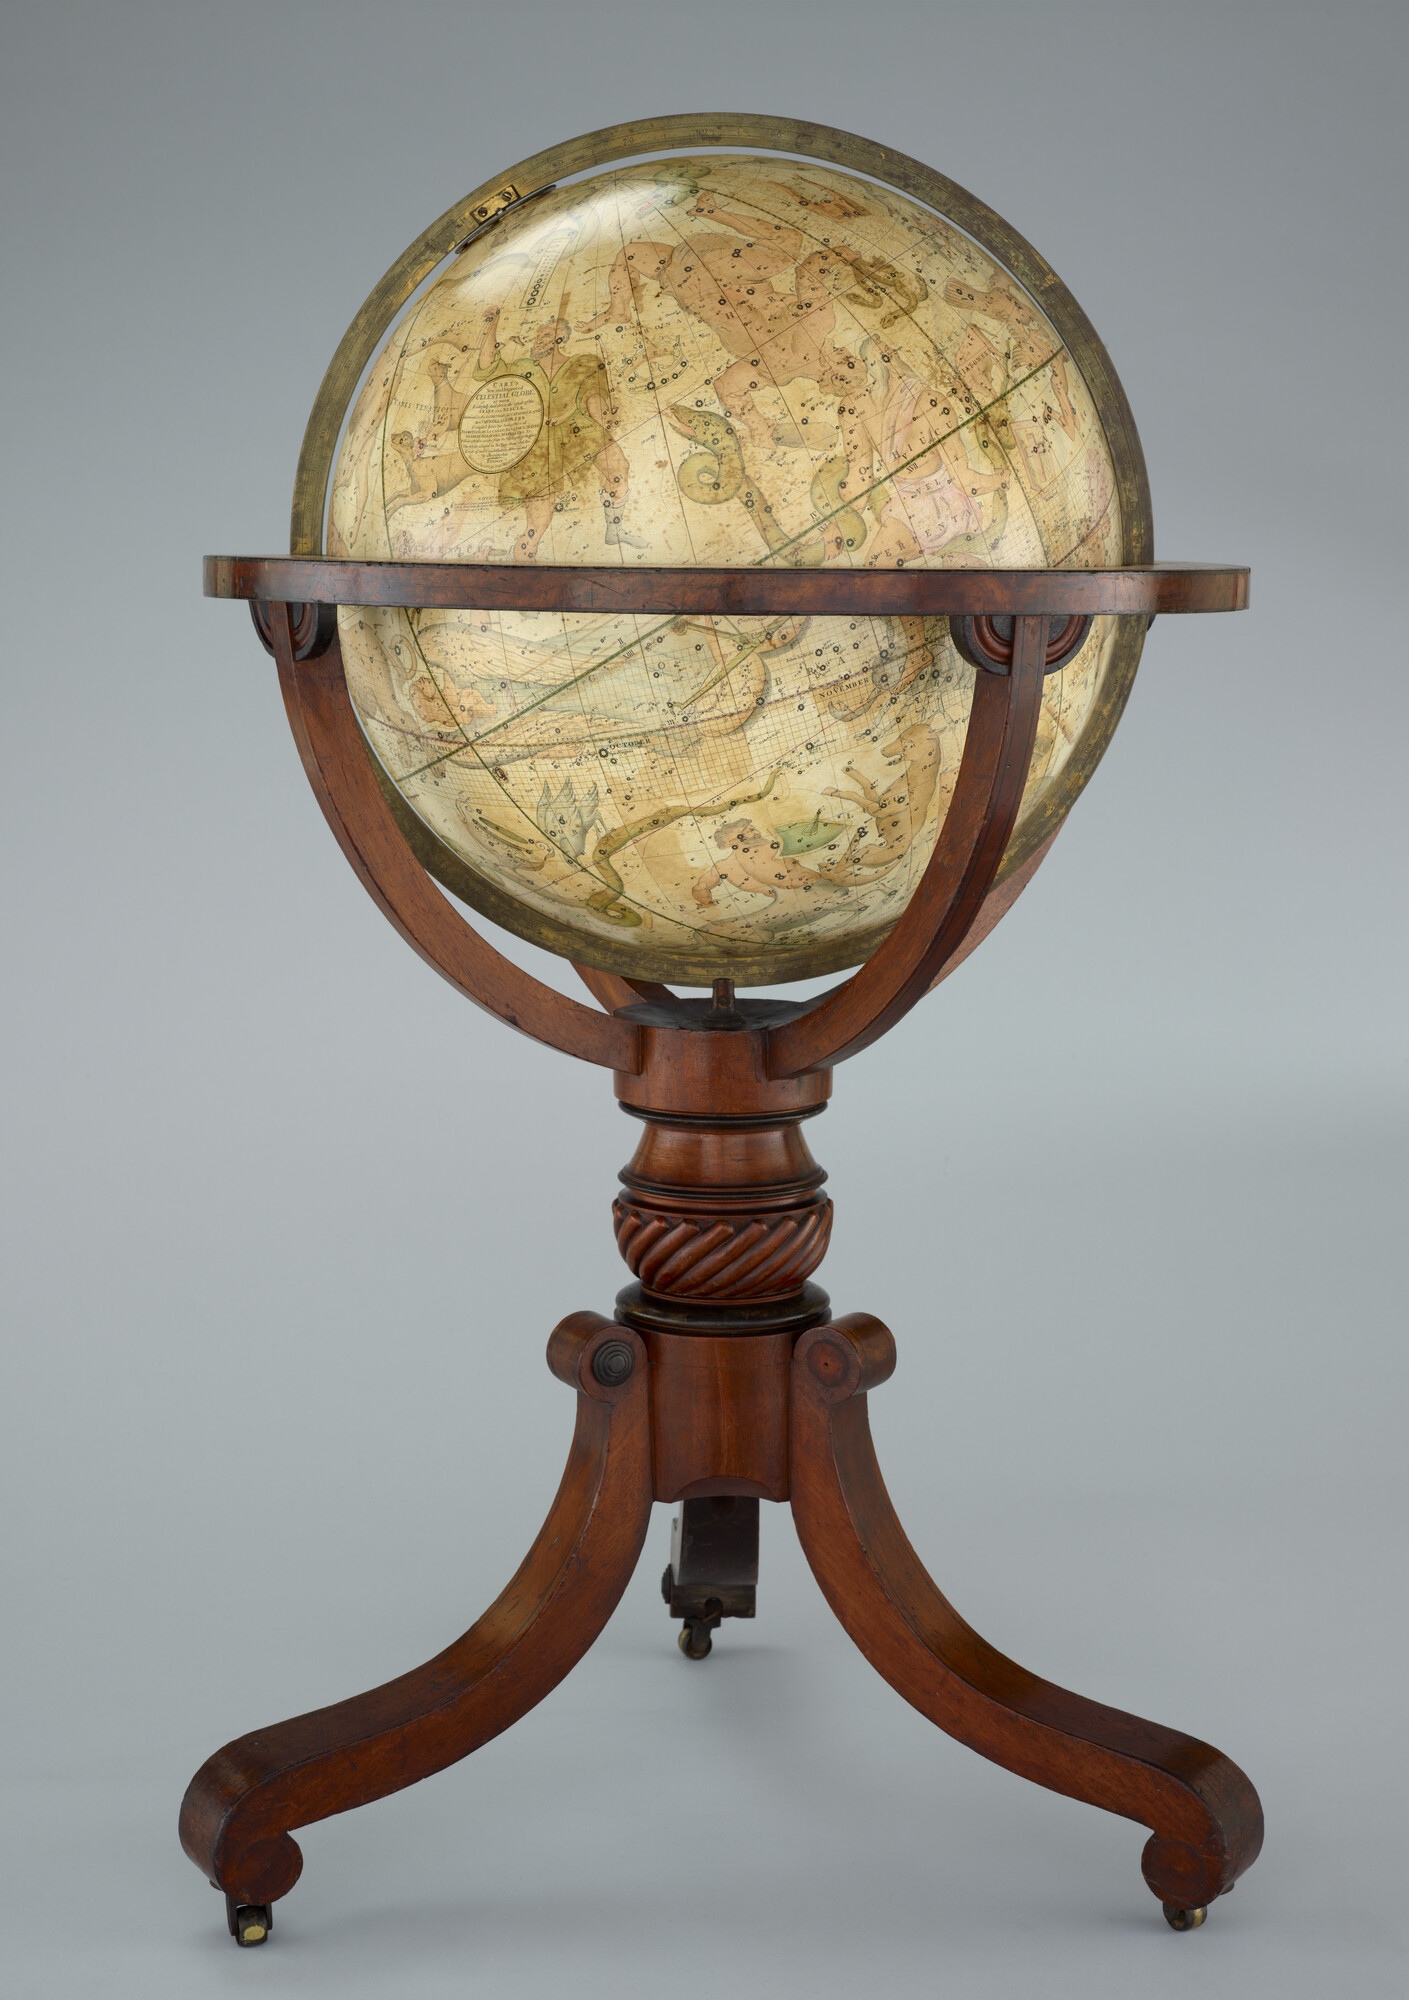 A.0145(025)12; Hemelglobe van 53,5 cm. in doorsnede door John en William Cary, 1799; globe